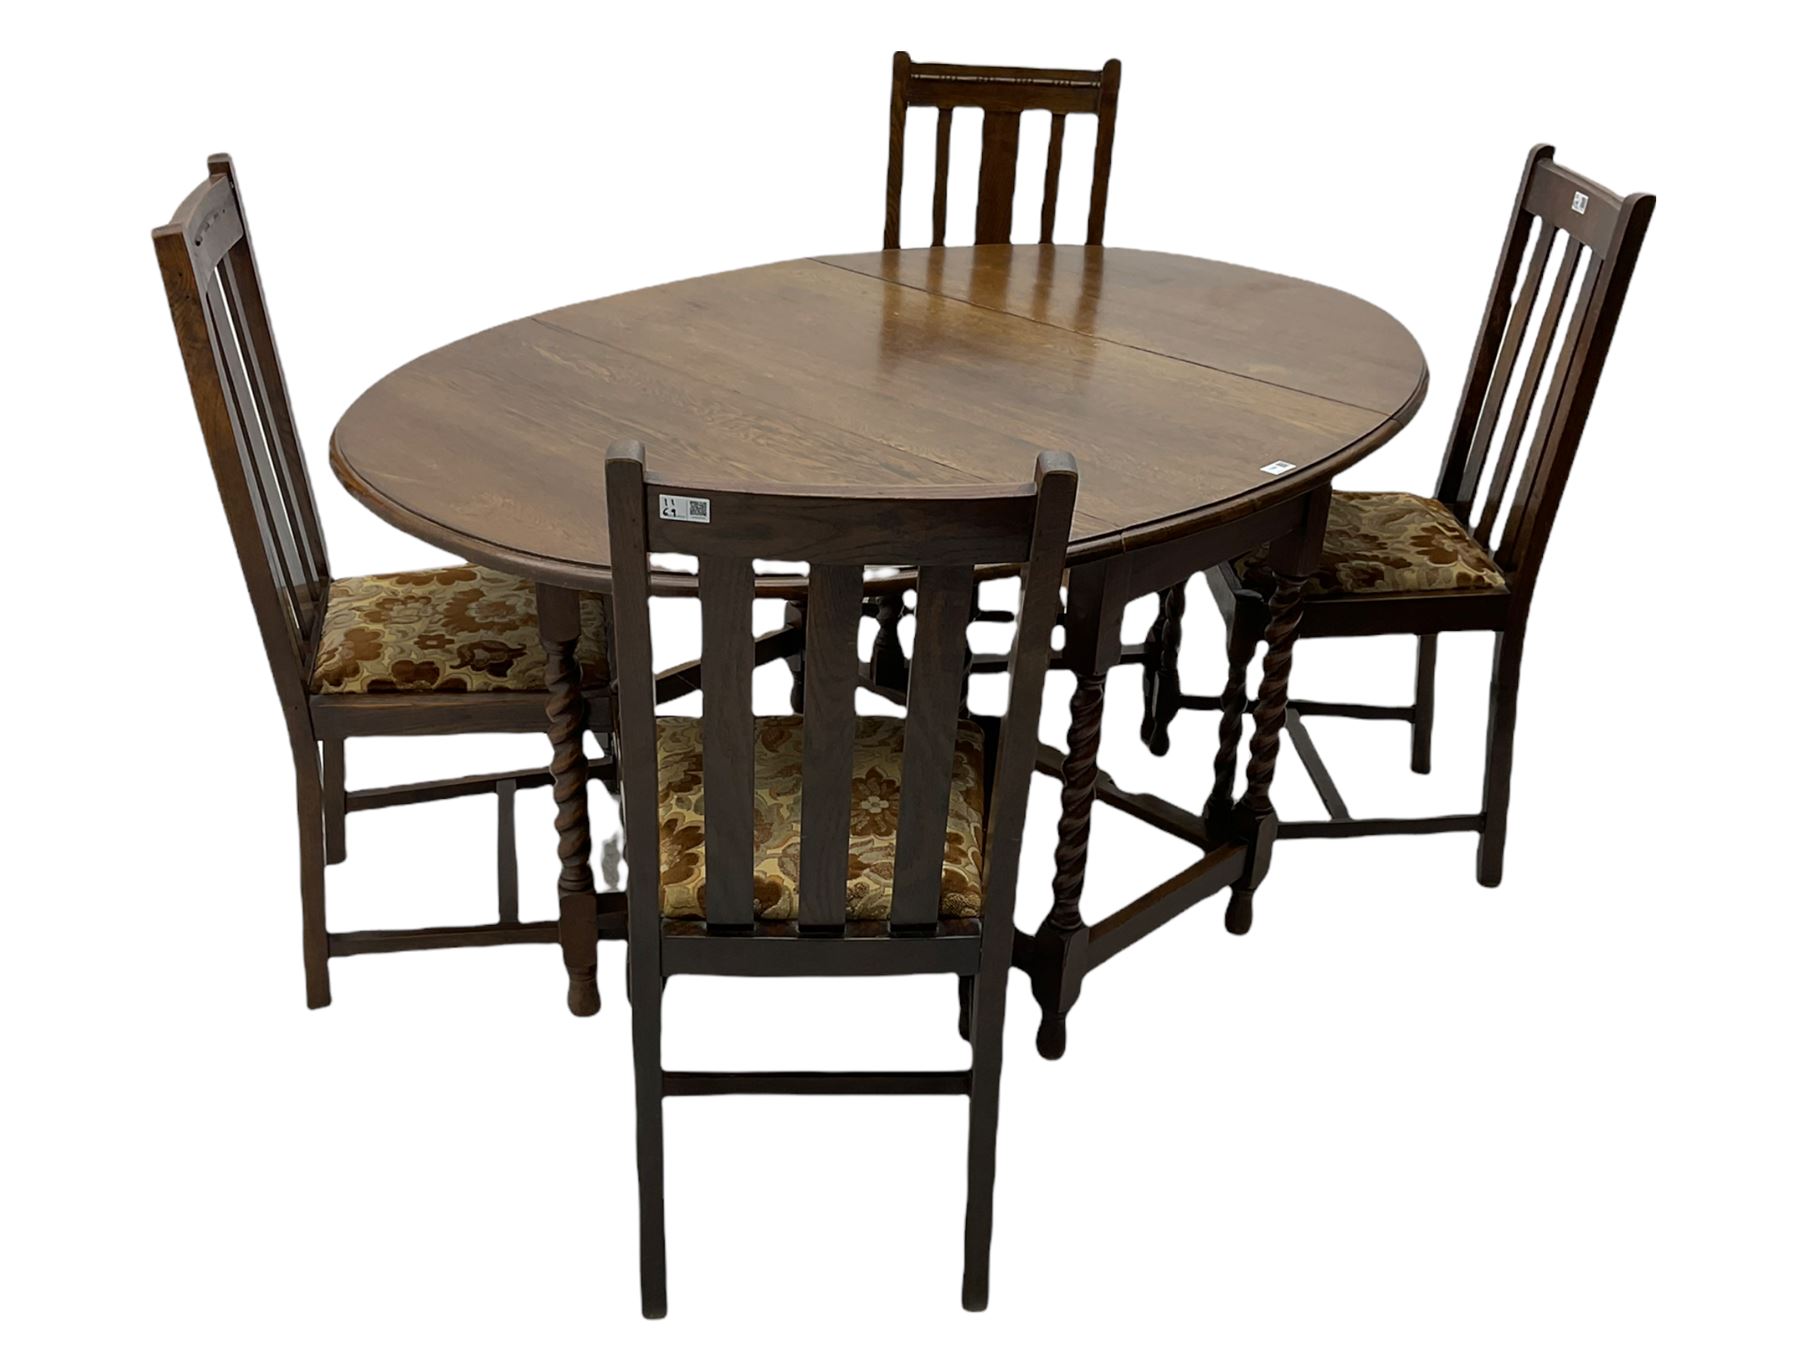 Early 20th century oak barley twist drop leaf dining table (105cm x 154cm - Image 16 of 24